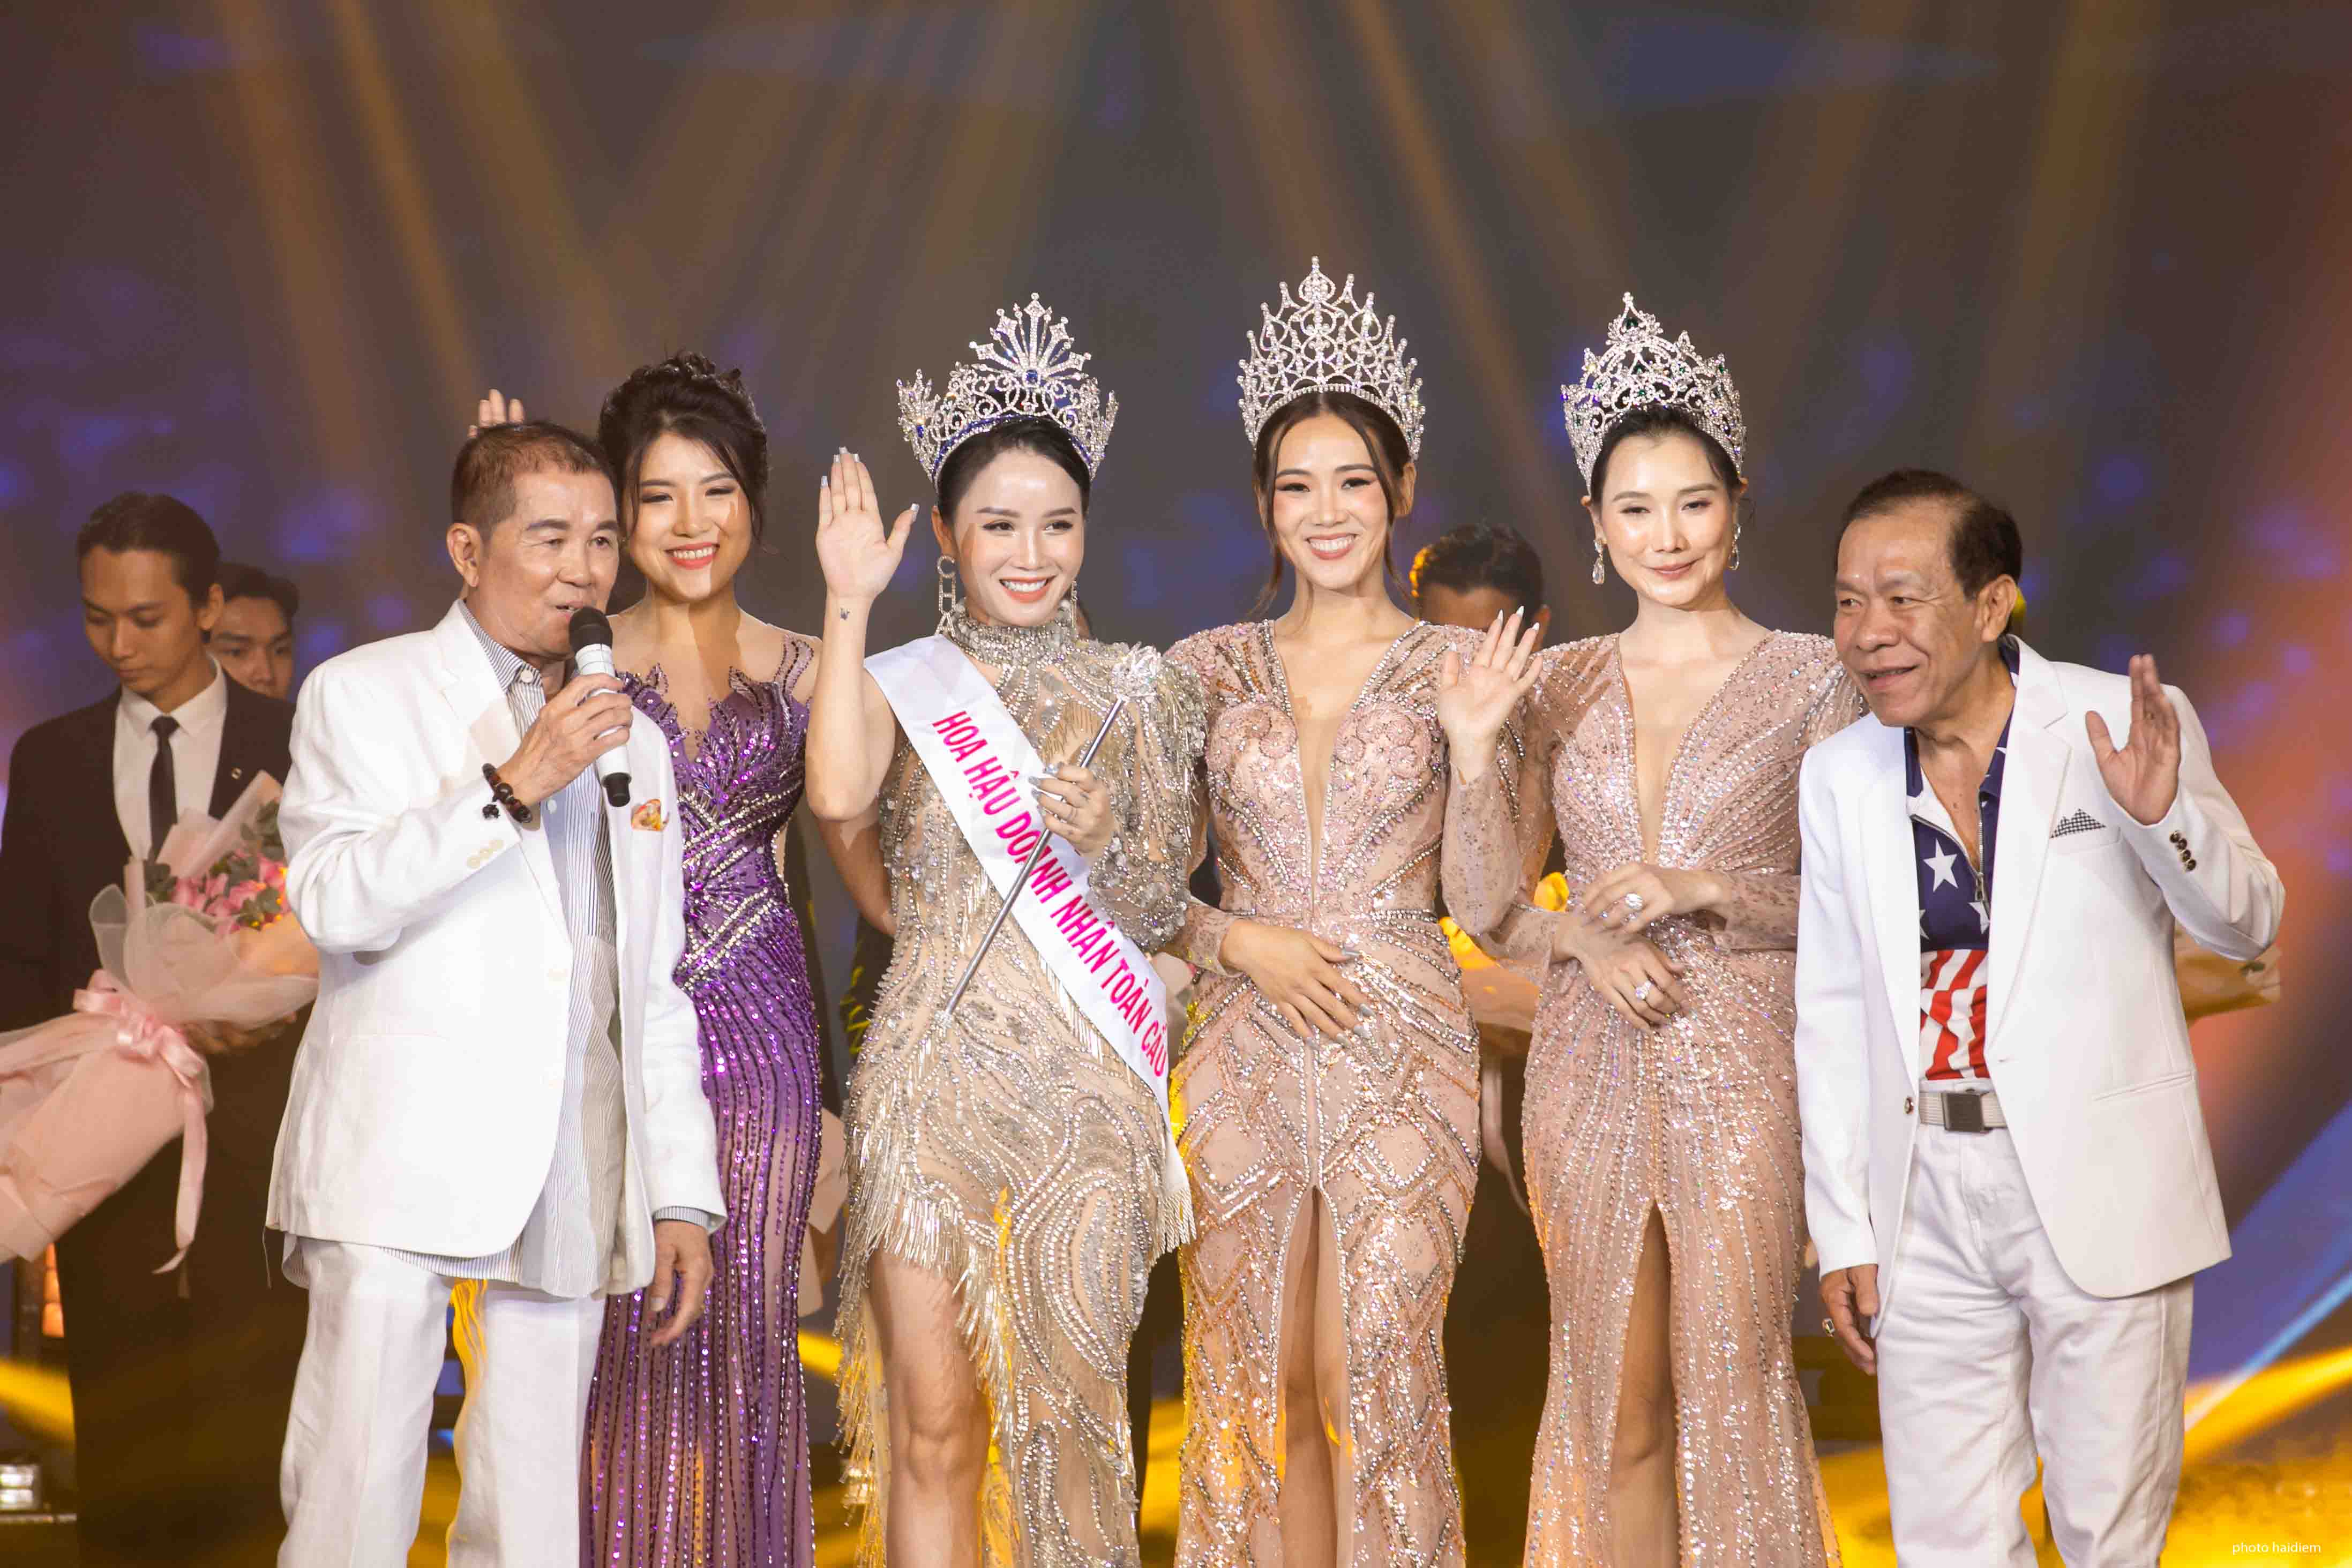 Cần biết - “Dạ tiệc Tinh hoa tỏa sáng” – Chúc mừng Miss Viet Nam Global 2022 (Hình 10).